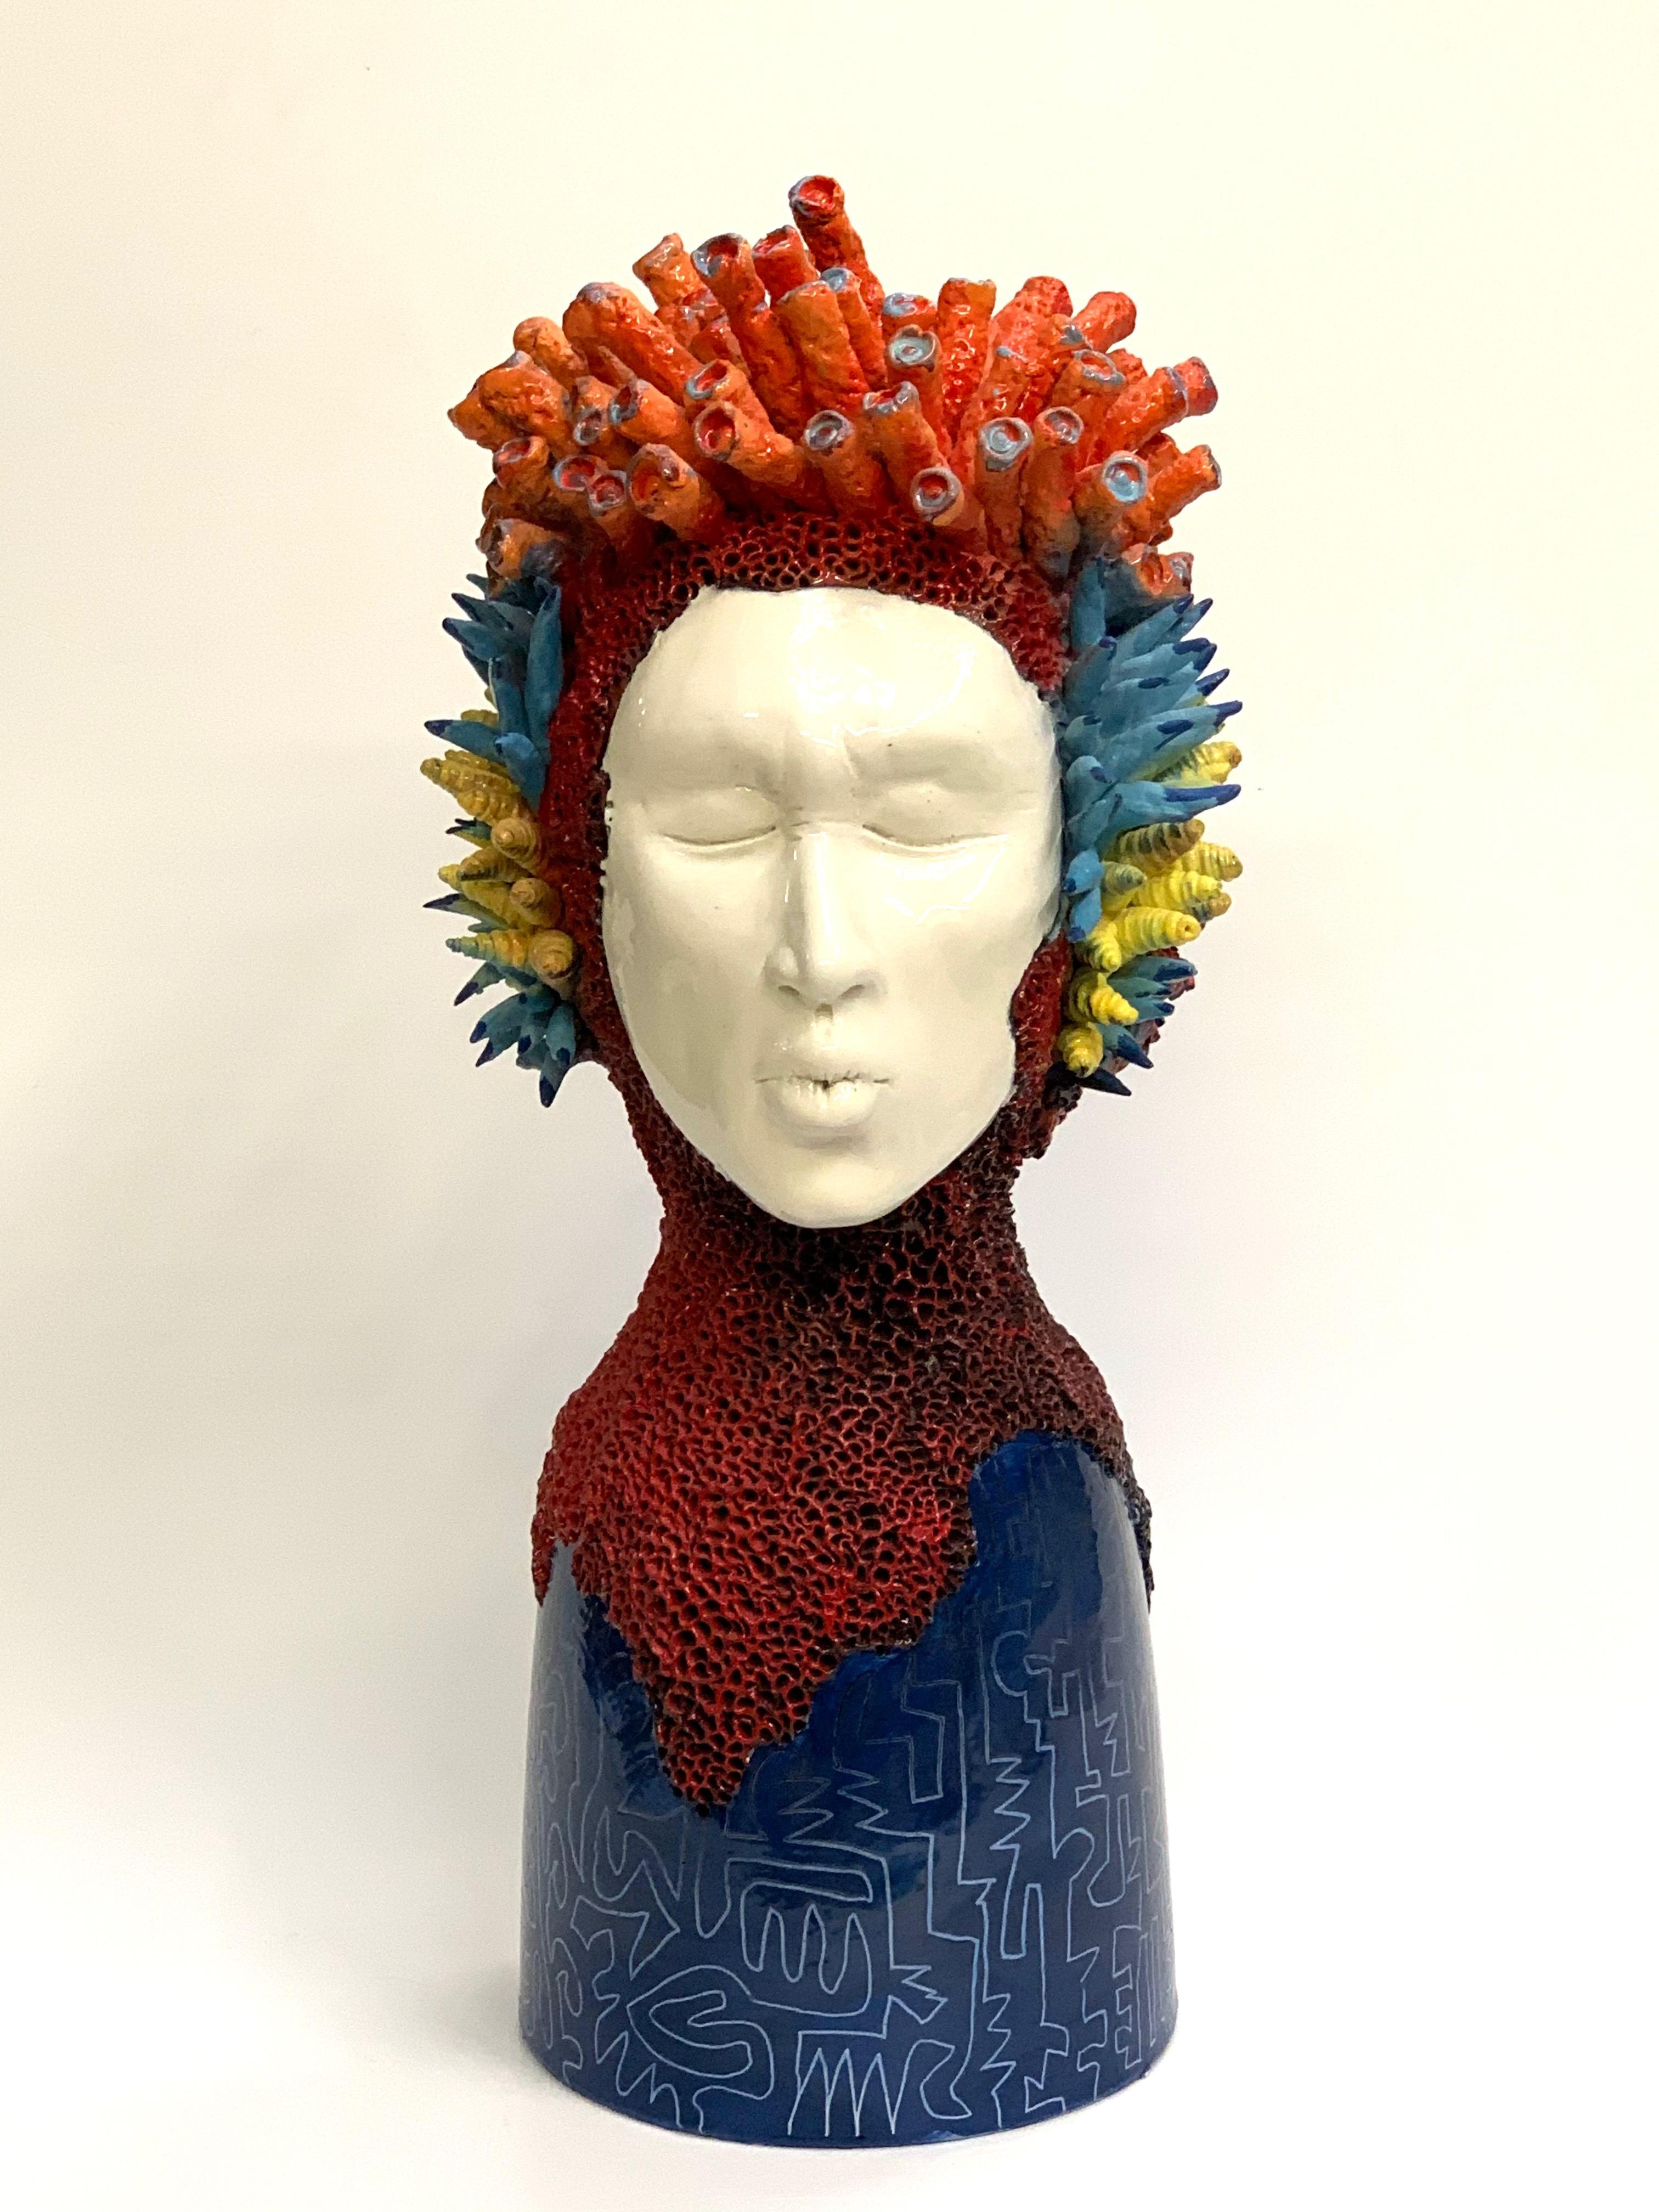 La pièce est une représentation unique de la tête d'une femme d'une manière moderne.
Notre designer crée ces pièces entièrement à la main.
  